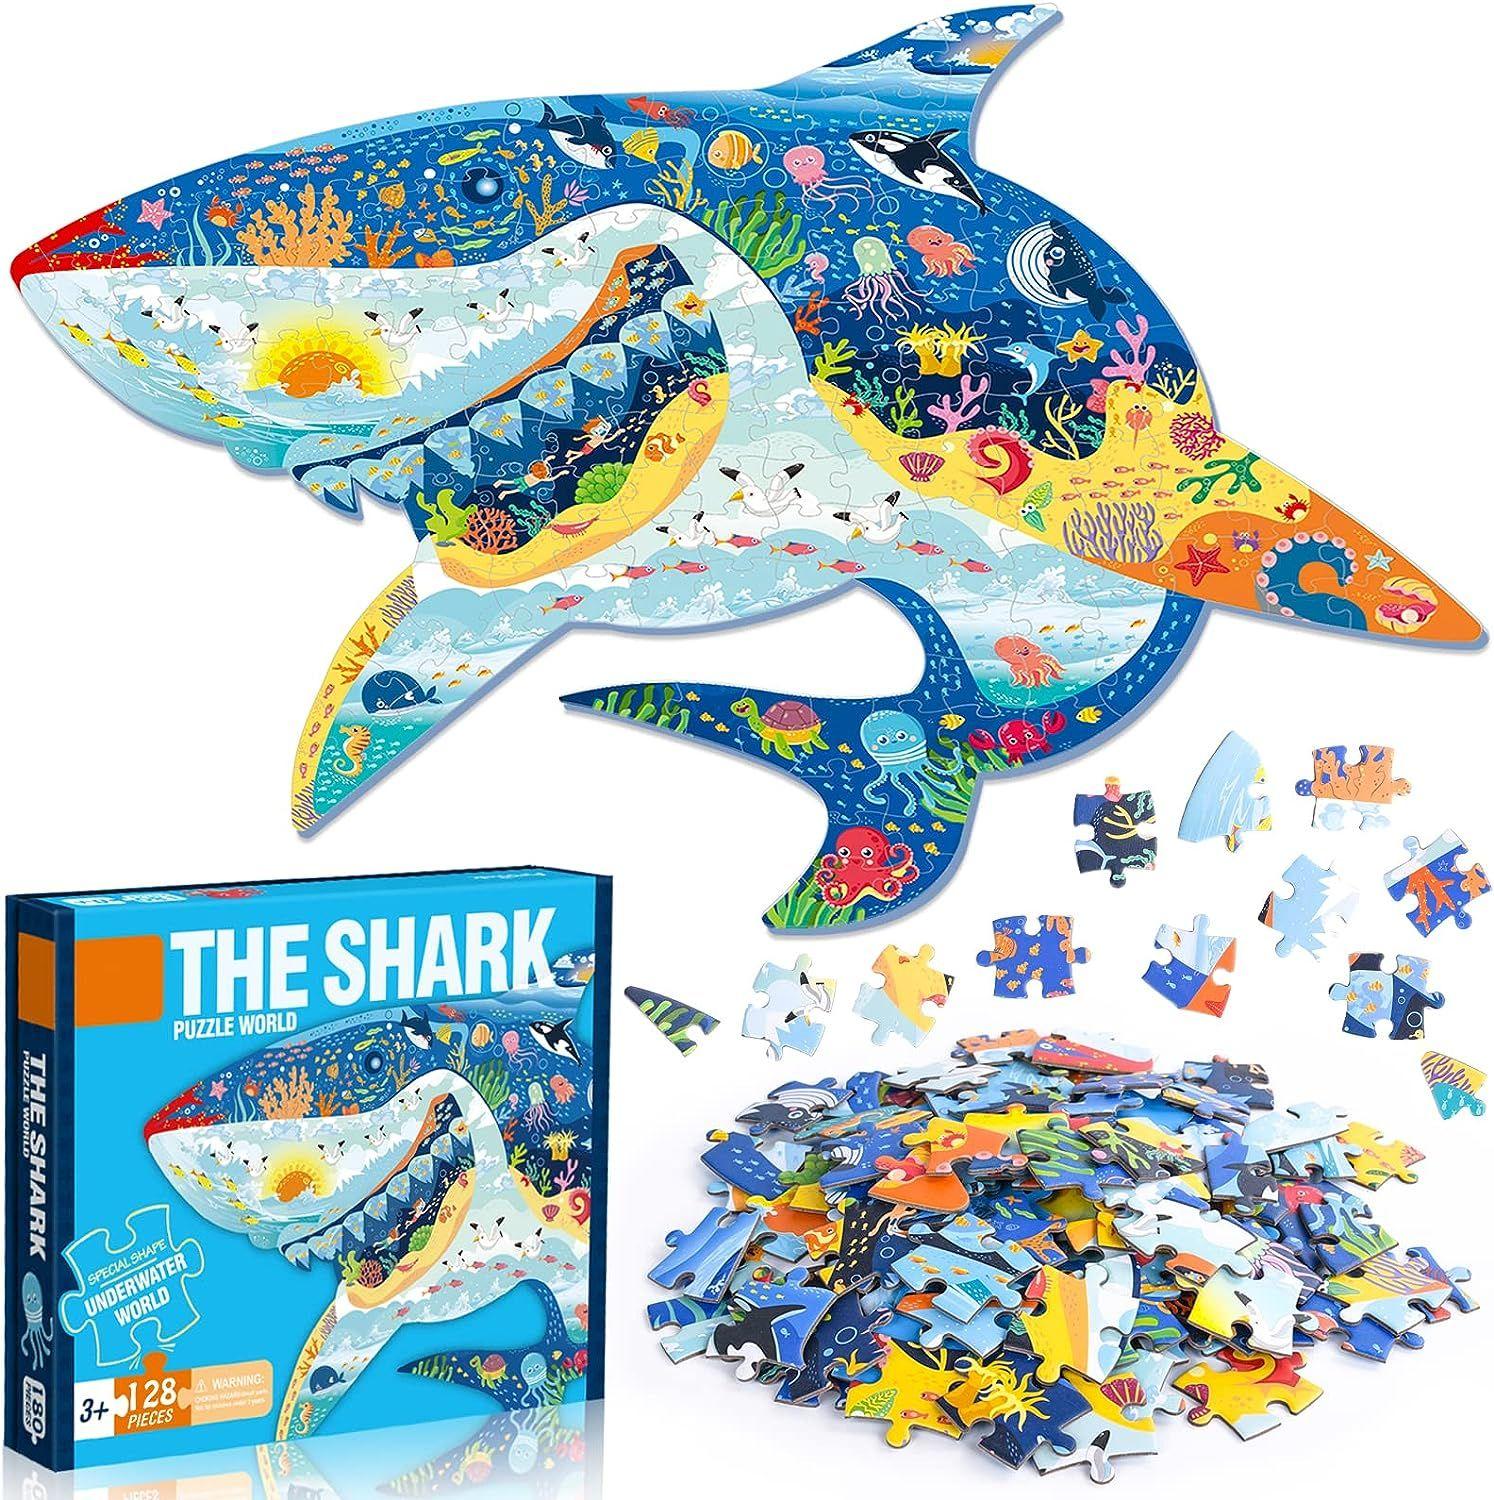 Puzzle Enfant, 128 Pièces Puzzle Animaux Enfant, Jouet Puzzles pour Enfant,  Jouet éducatif Enfant, Cadeau Jouet pour Fille et Garçon de 4 5 6 7 8 9 10  Ans (Requin)